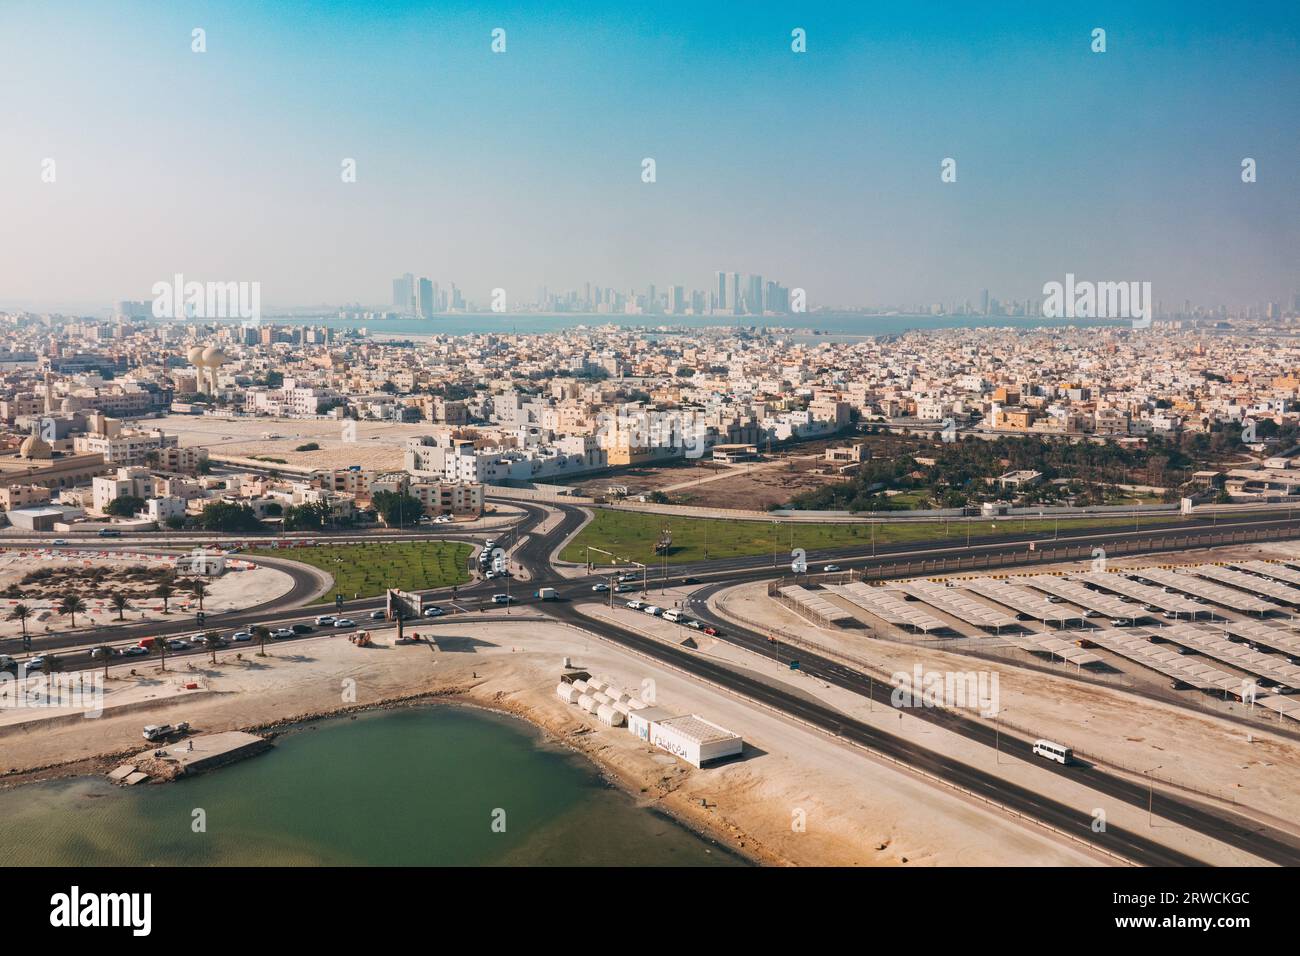 Una vista aerea della cittadina di Muharraq, vicino all'Aeroporto Internazionale del Bahrain. La città di Manama può essere vista in lontananza dall'altra parte della baia Foto Stock